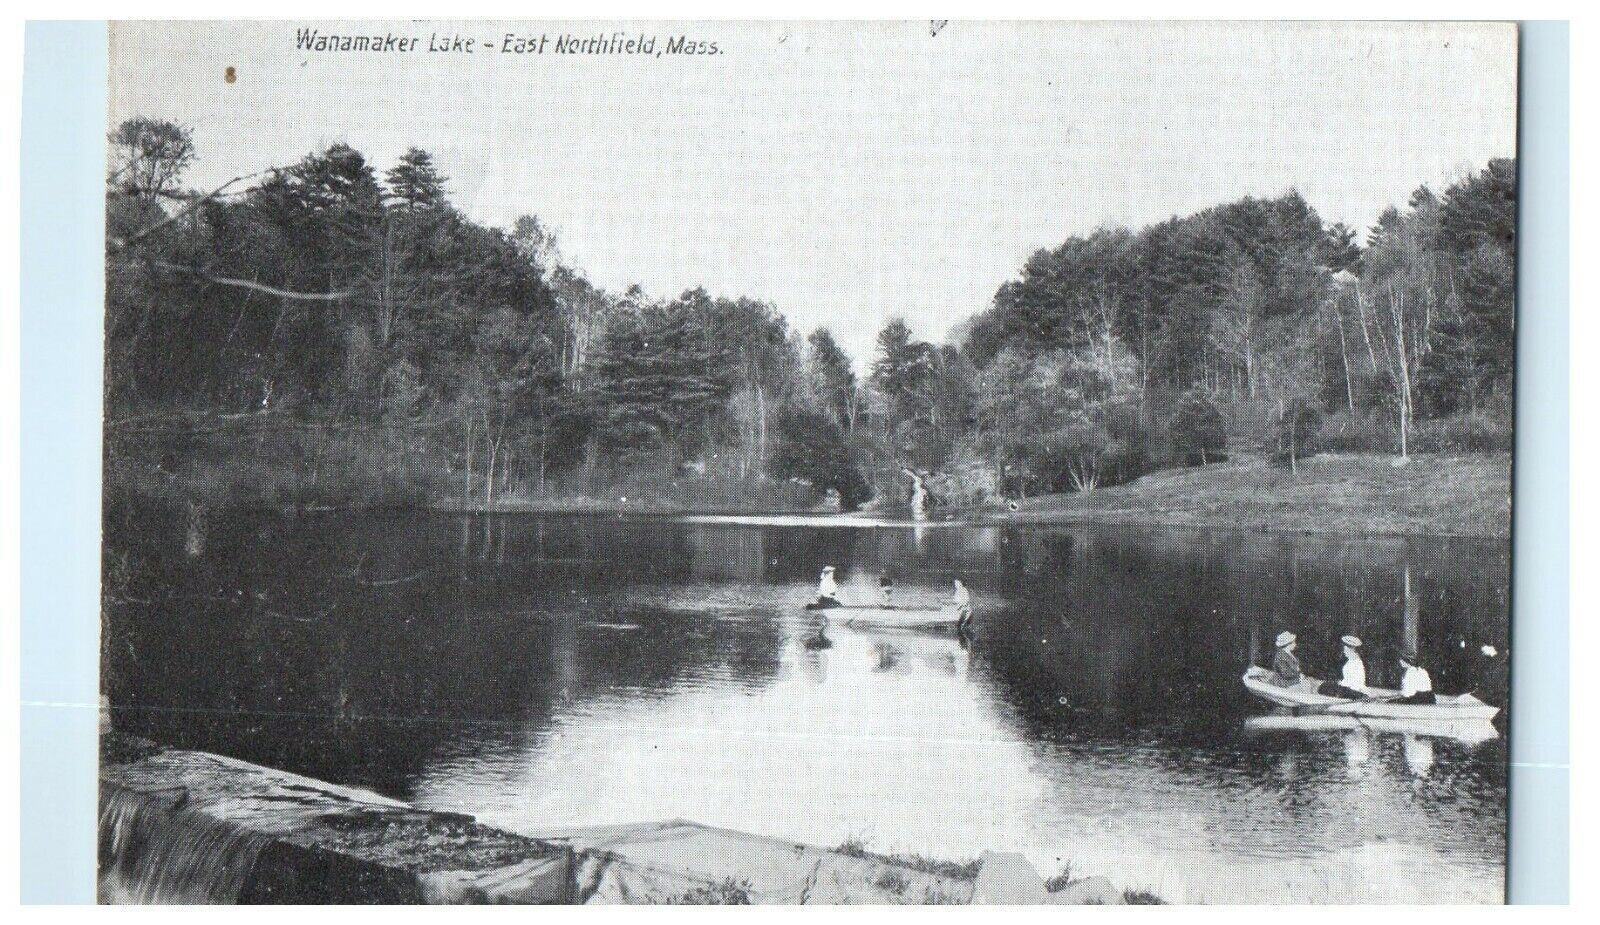 1911 Wanamaker Lake, East Northfield Massachusetts MA Postcard